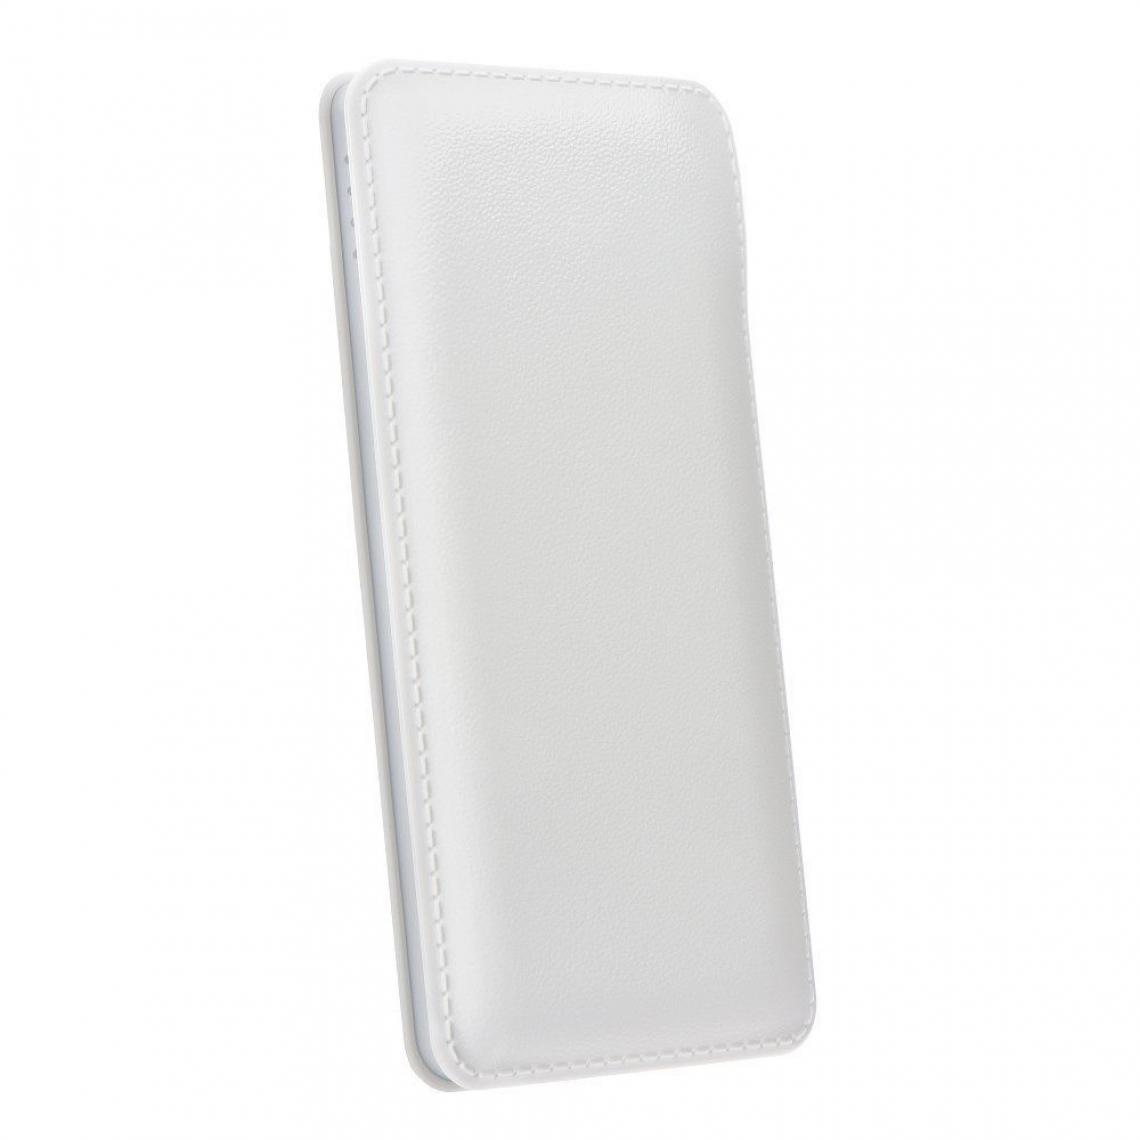 Ozzzo - Chargeur batterie externe 20000 mAh powerbank ozzzo blanc pour Lenovo Yoga 2 Pro - Autres accessoires smartphone